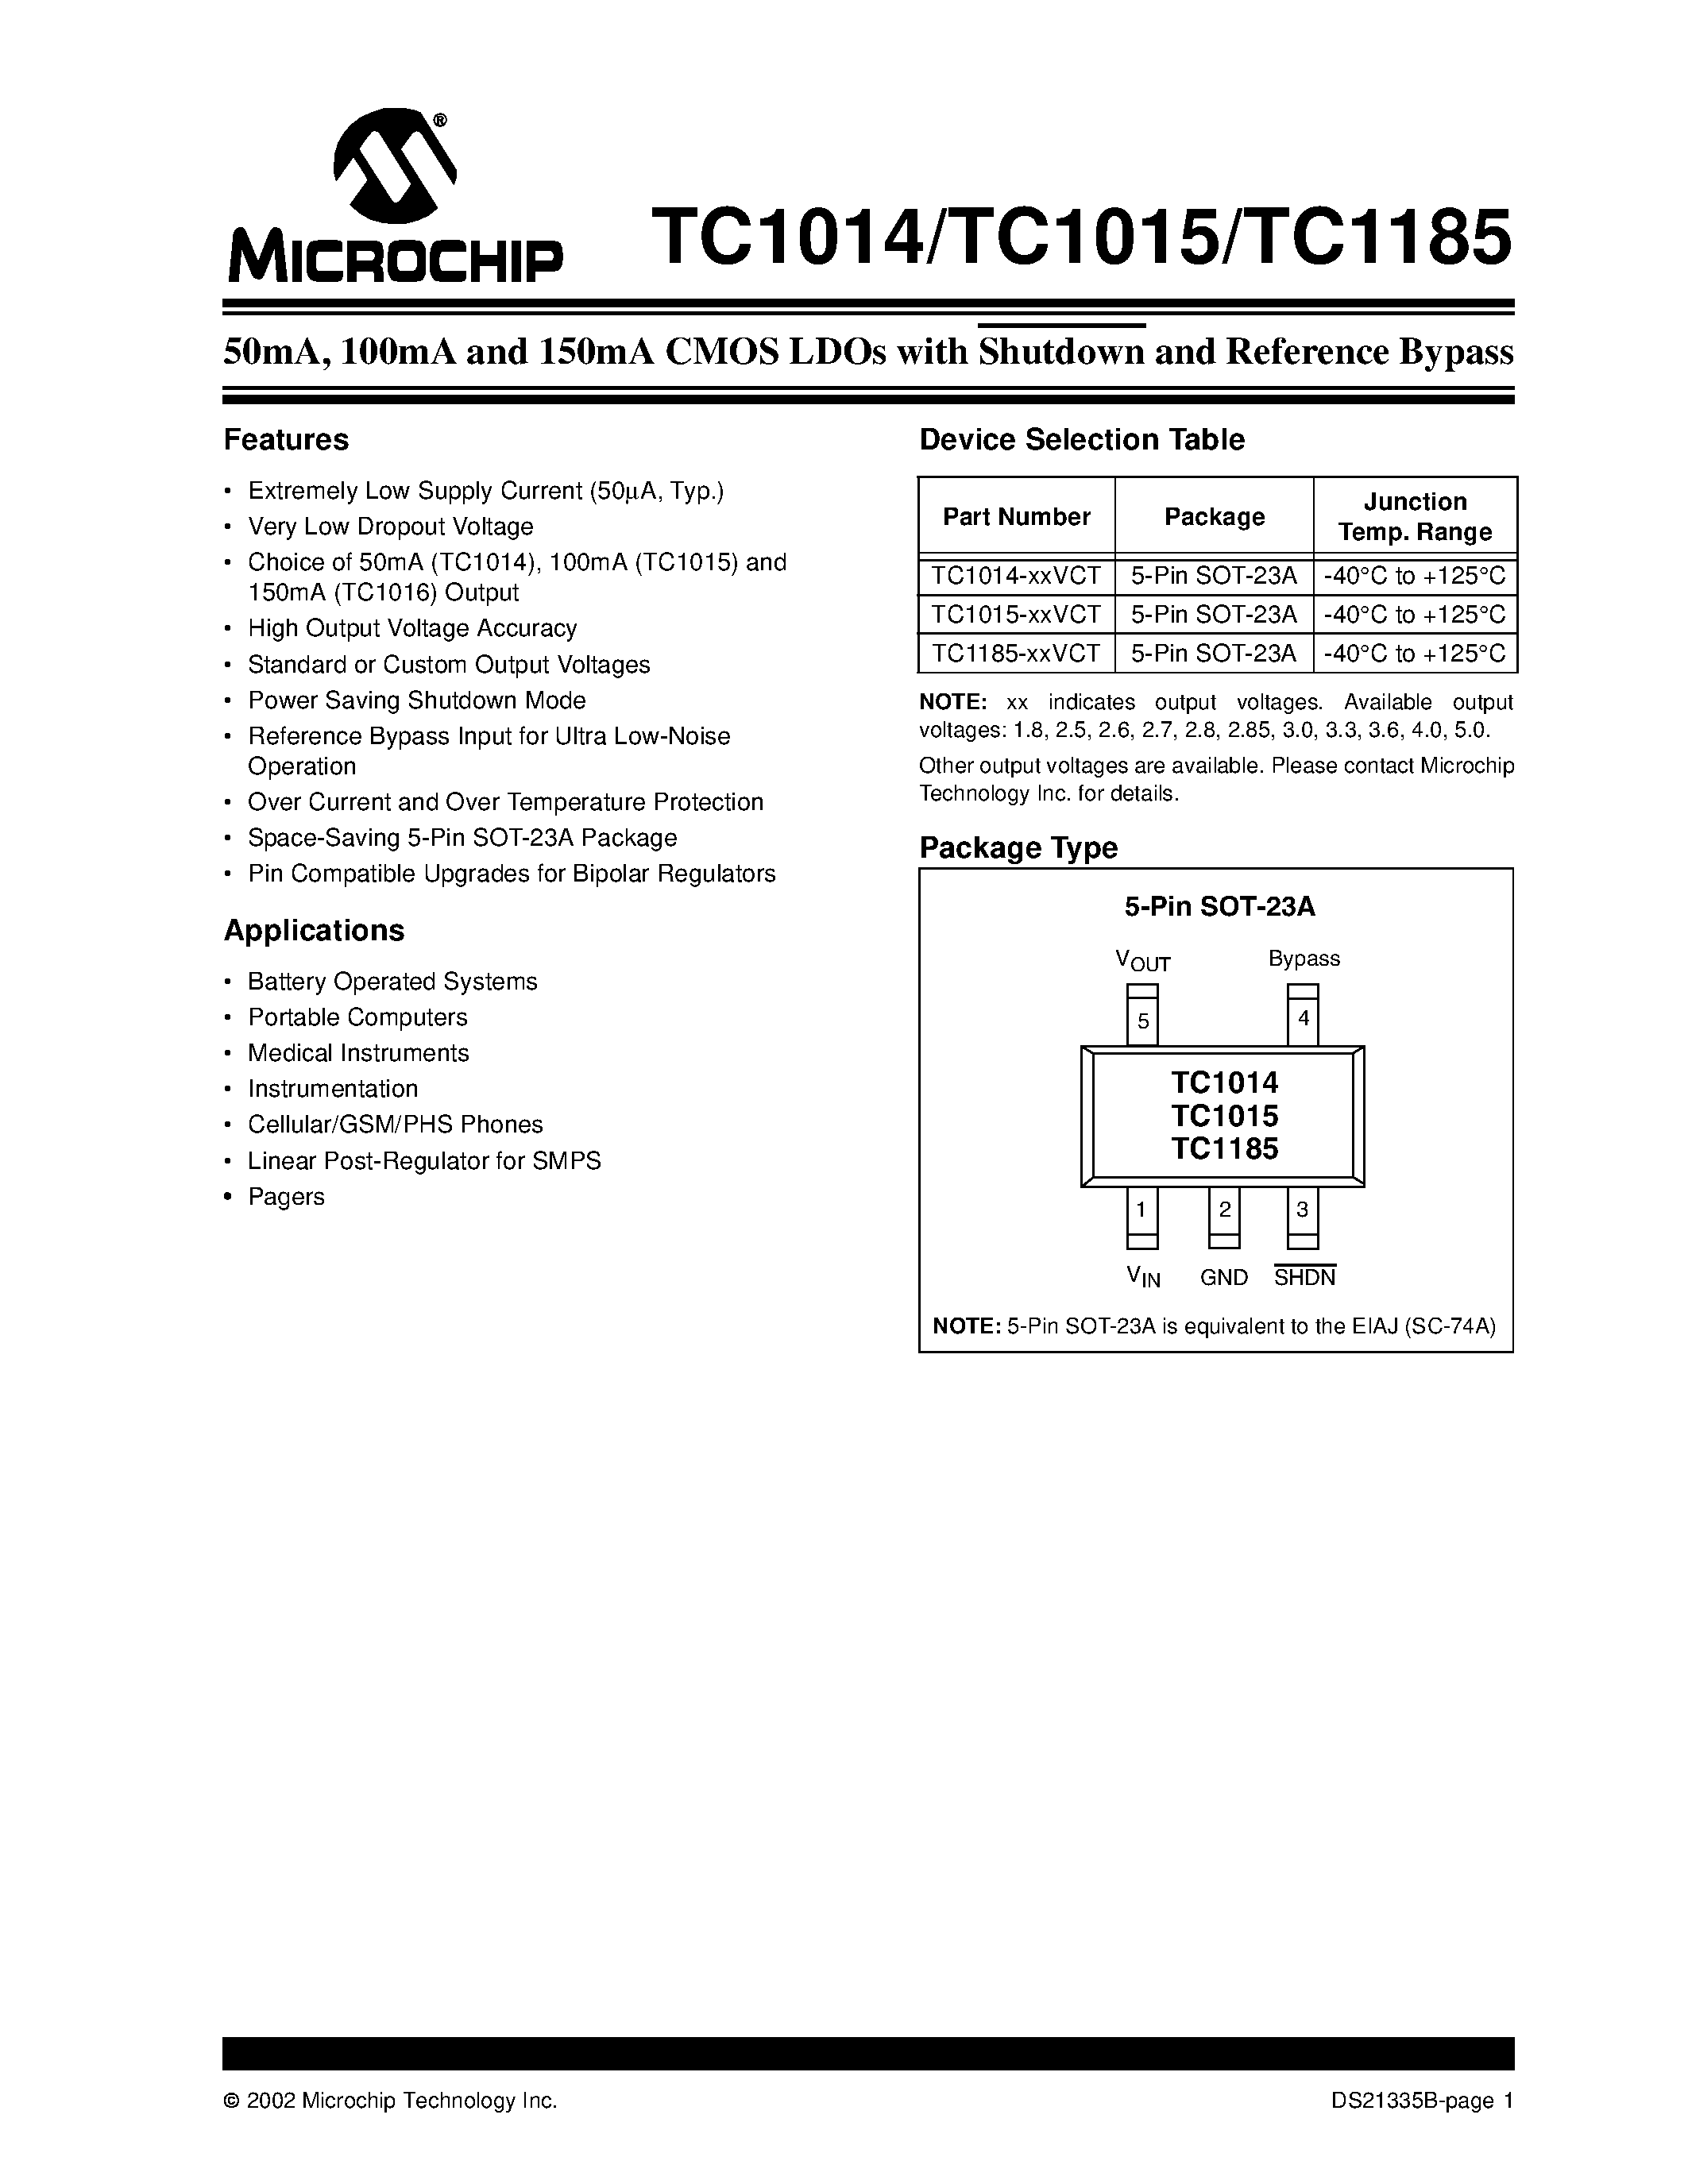 Даташит TC1014 - (TC1014 / TC1015 / TC1185) CMOS LDOs with Shutdown and Reference Bypass страница 1